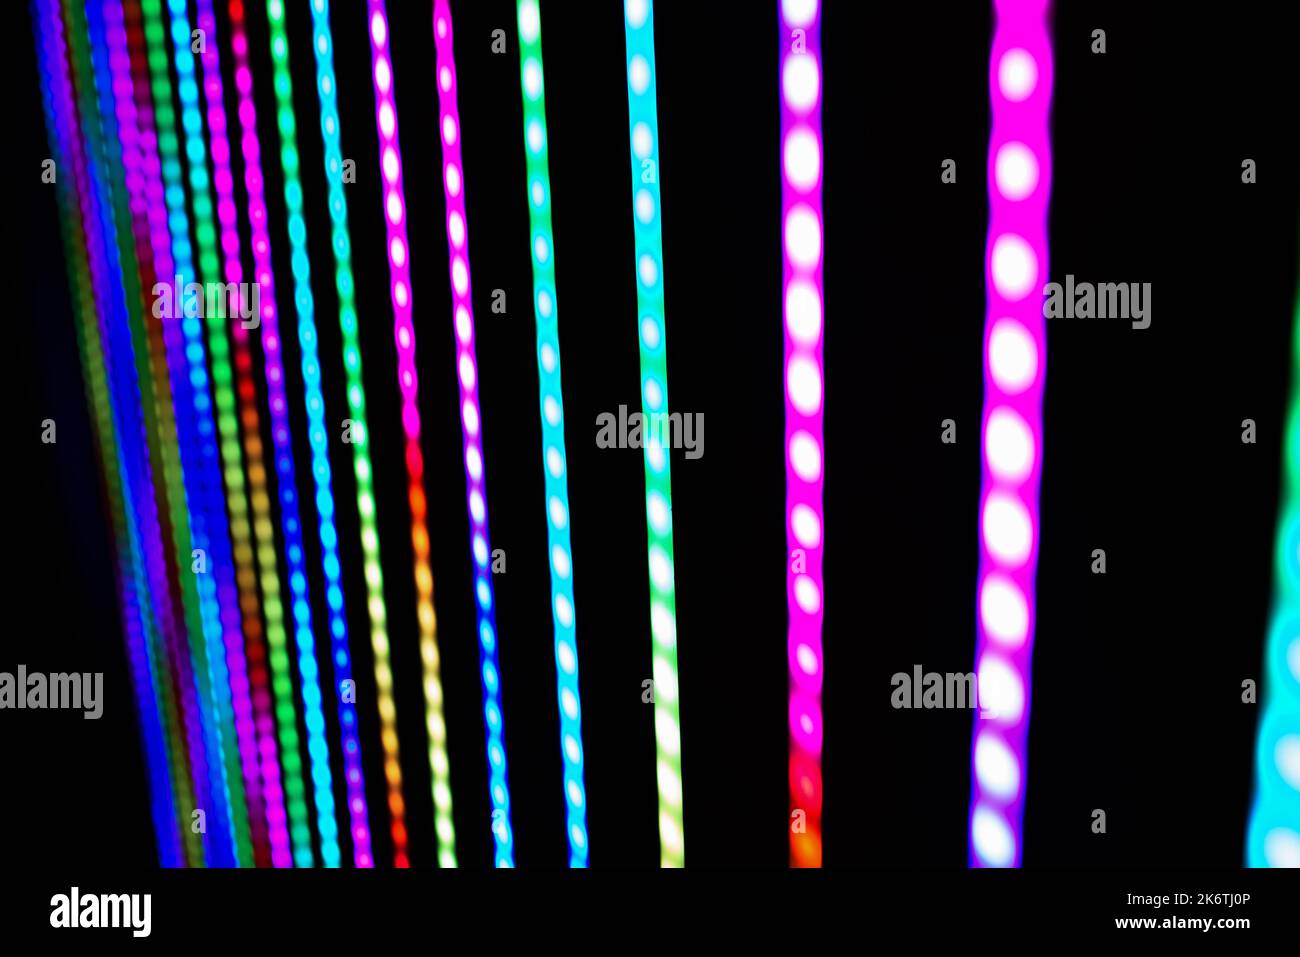 Dettaglio delle strisce LED di illuminazione colorate illuminate al buio. Foto Stock